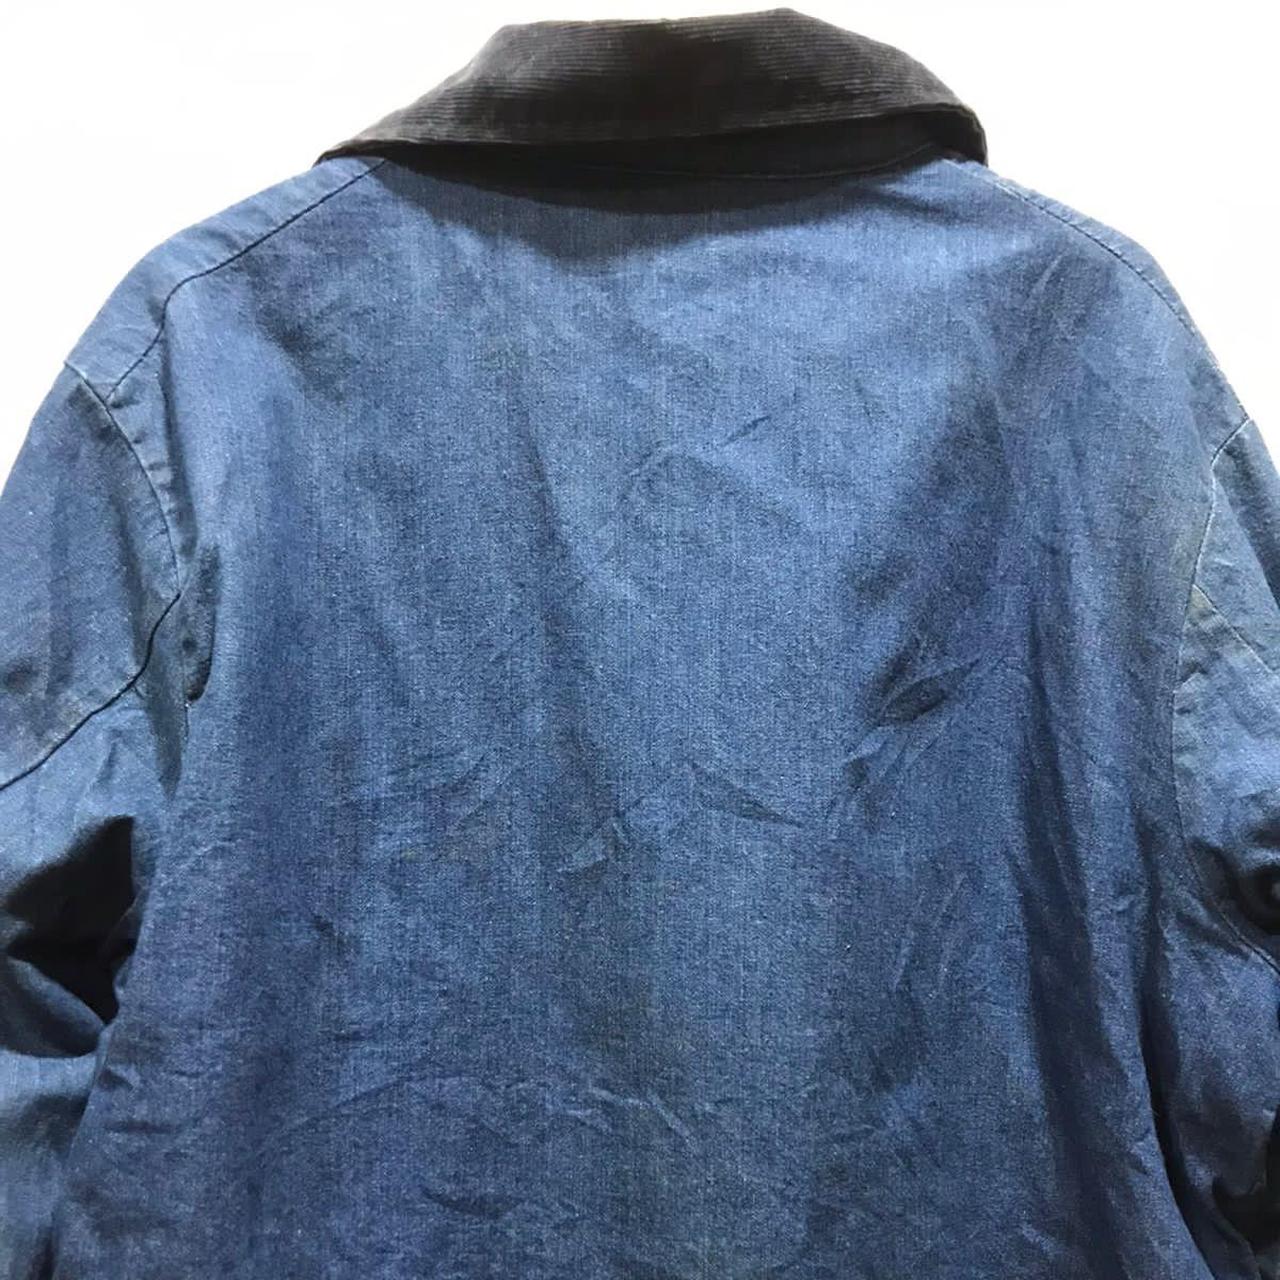 Blue bell Big Ben jacket Vintage workwear Big Ben... - Depop